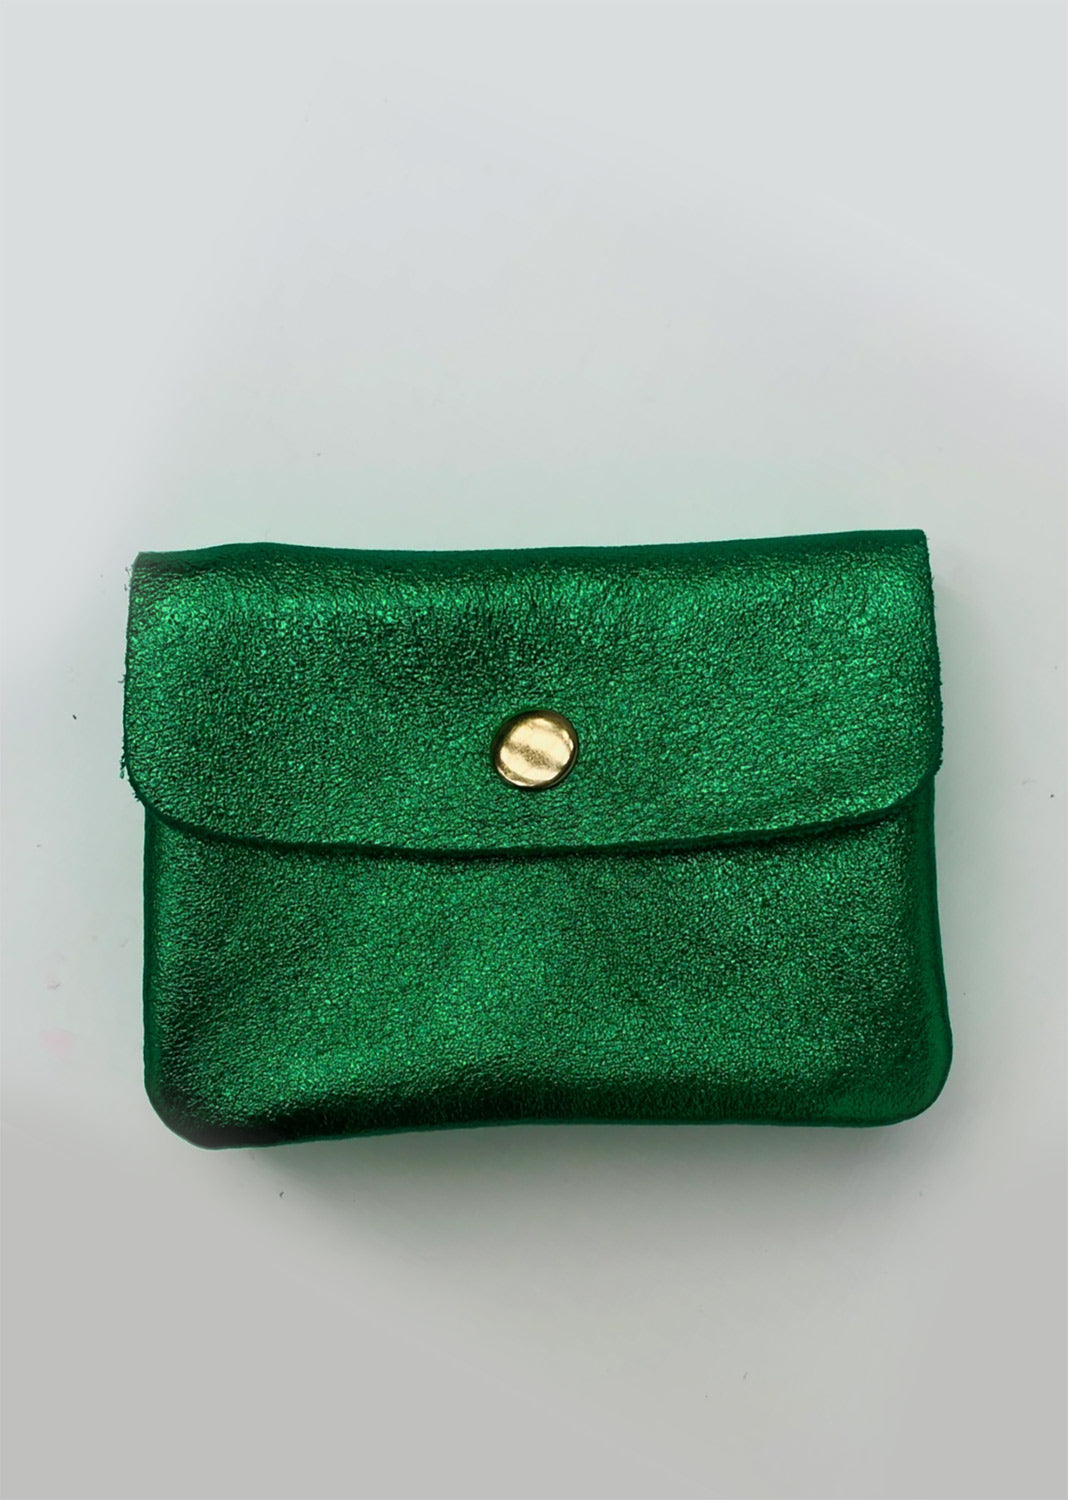 Dark green alligator purse with white buckle on Craiyon